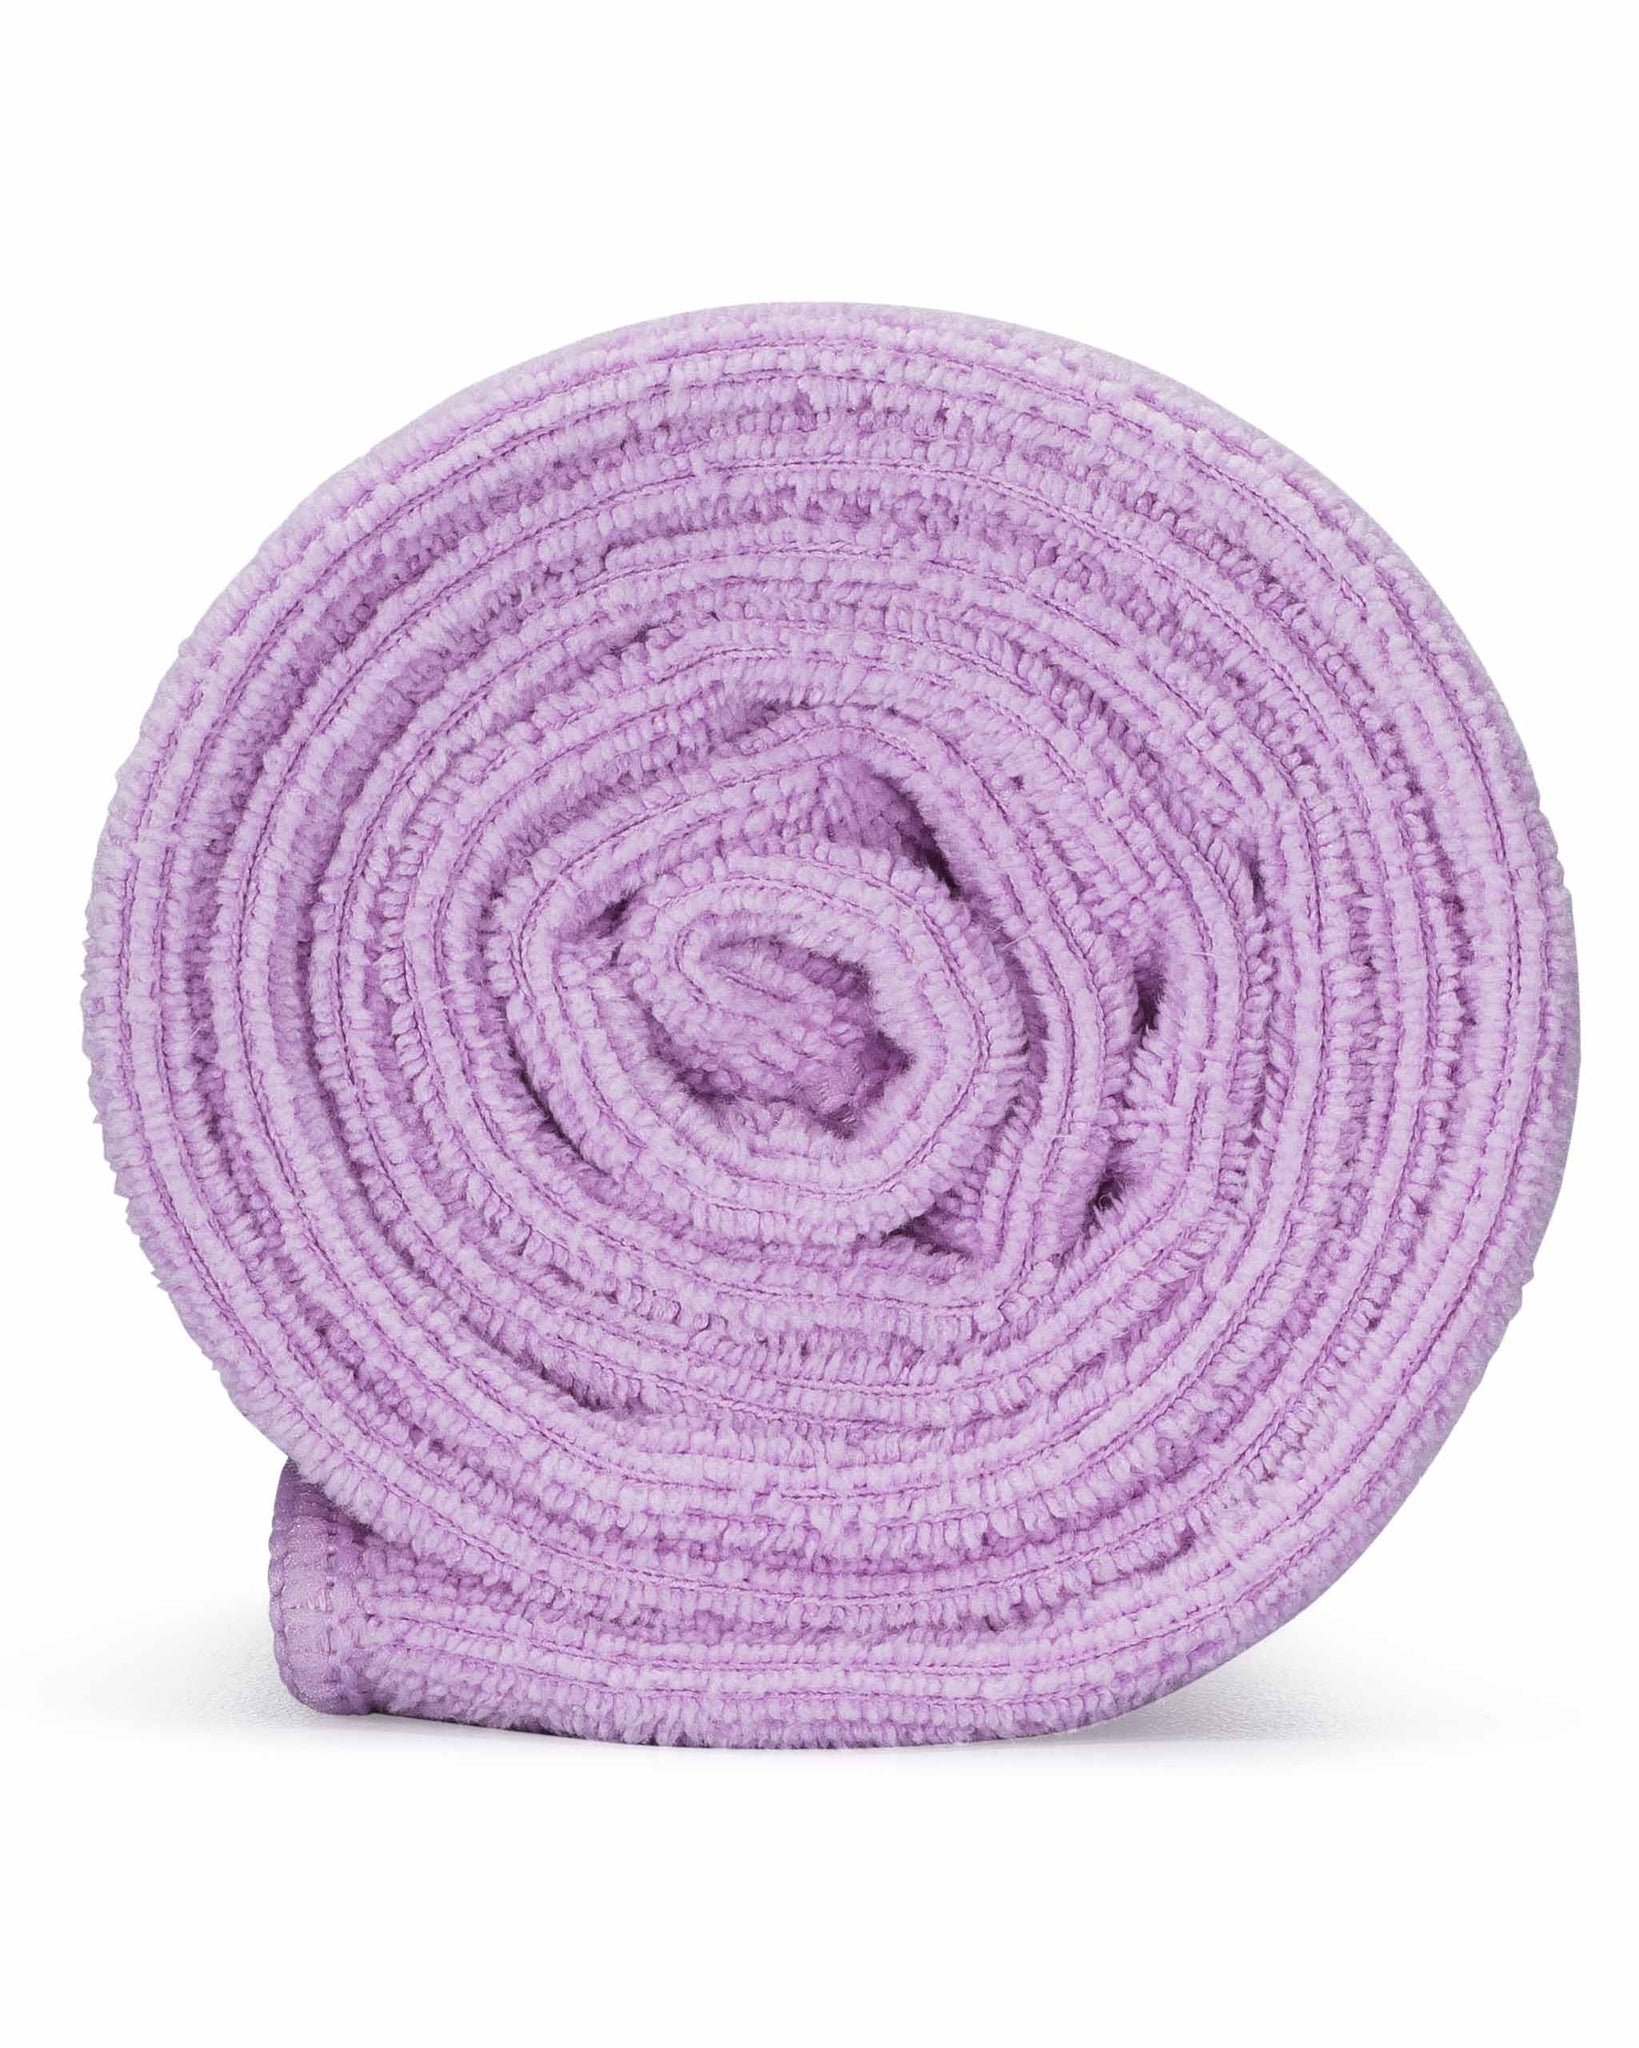 2 Pk XL Microfiber Hair Towels 24 x 48 Anti Frizz Bath Towel Light Pink  NEW